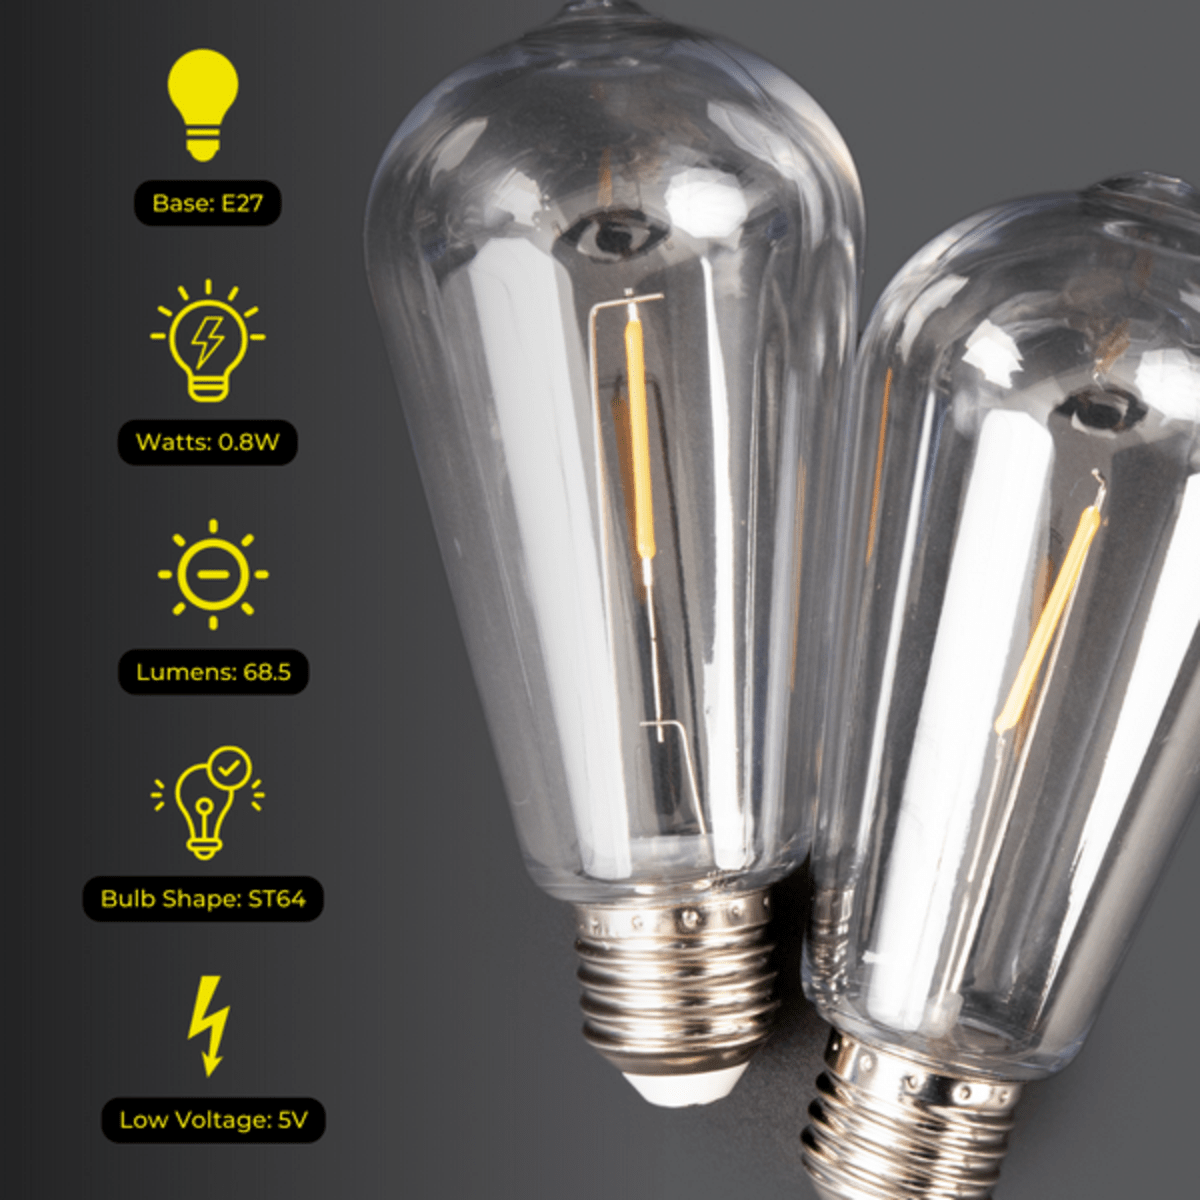 Litehouse LED Bulb Replacement for Solar Festoon Bulb String Lights